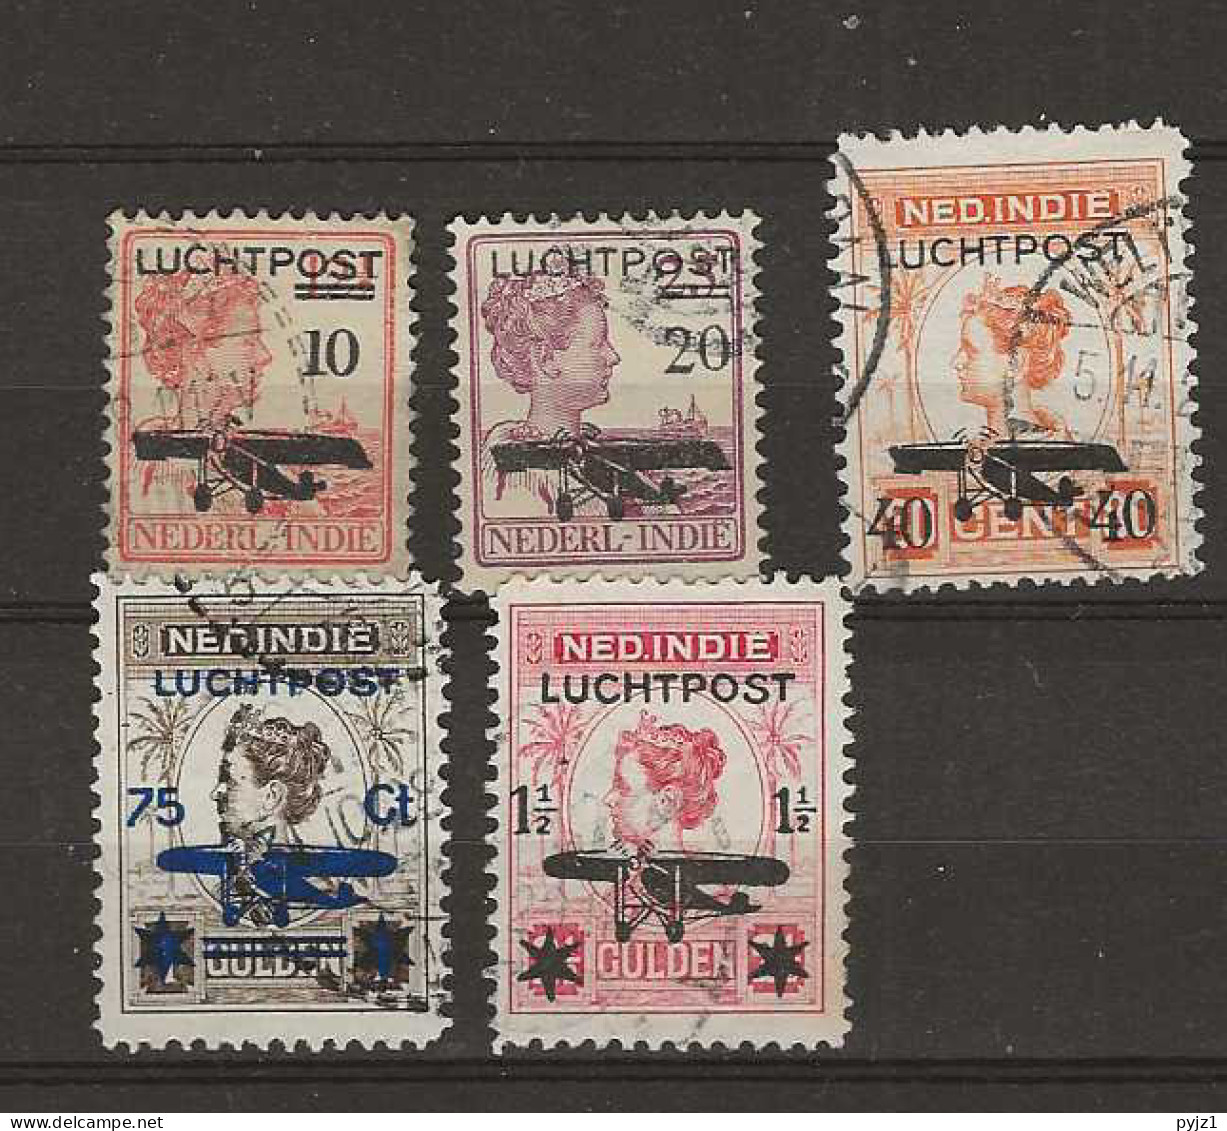 1928 USED Nederlands Indië Airmail NVPH LP 1-5 - Netherlands Indies